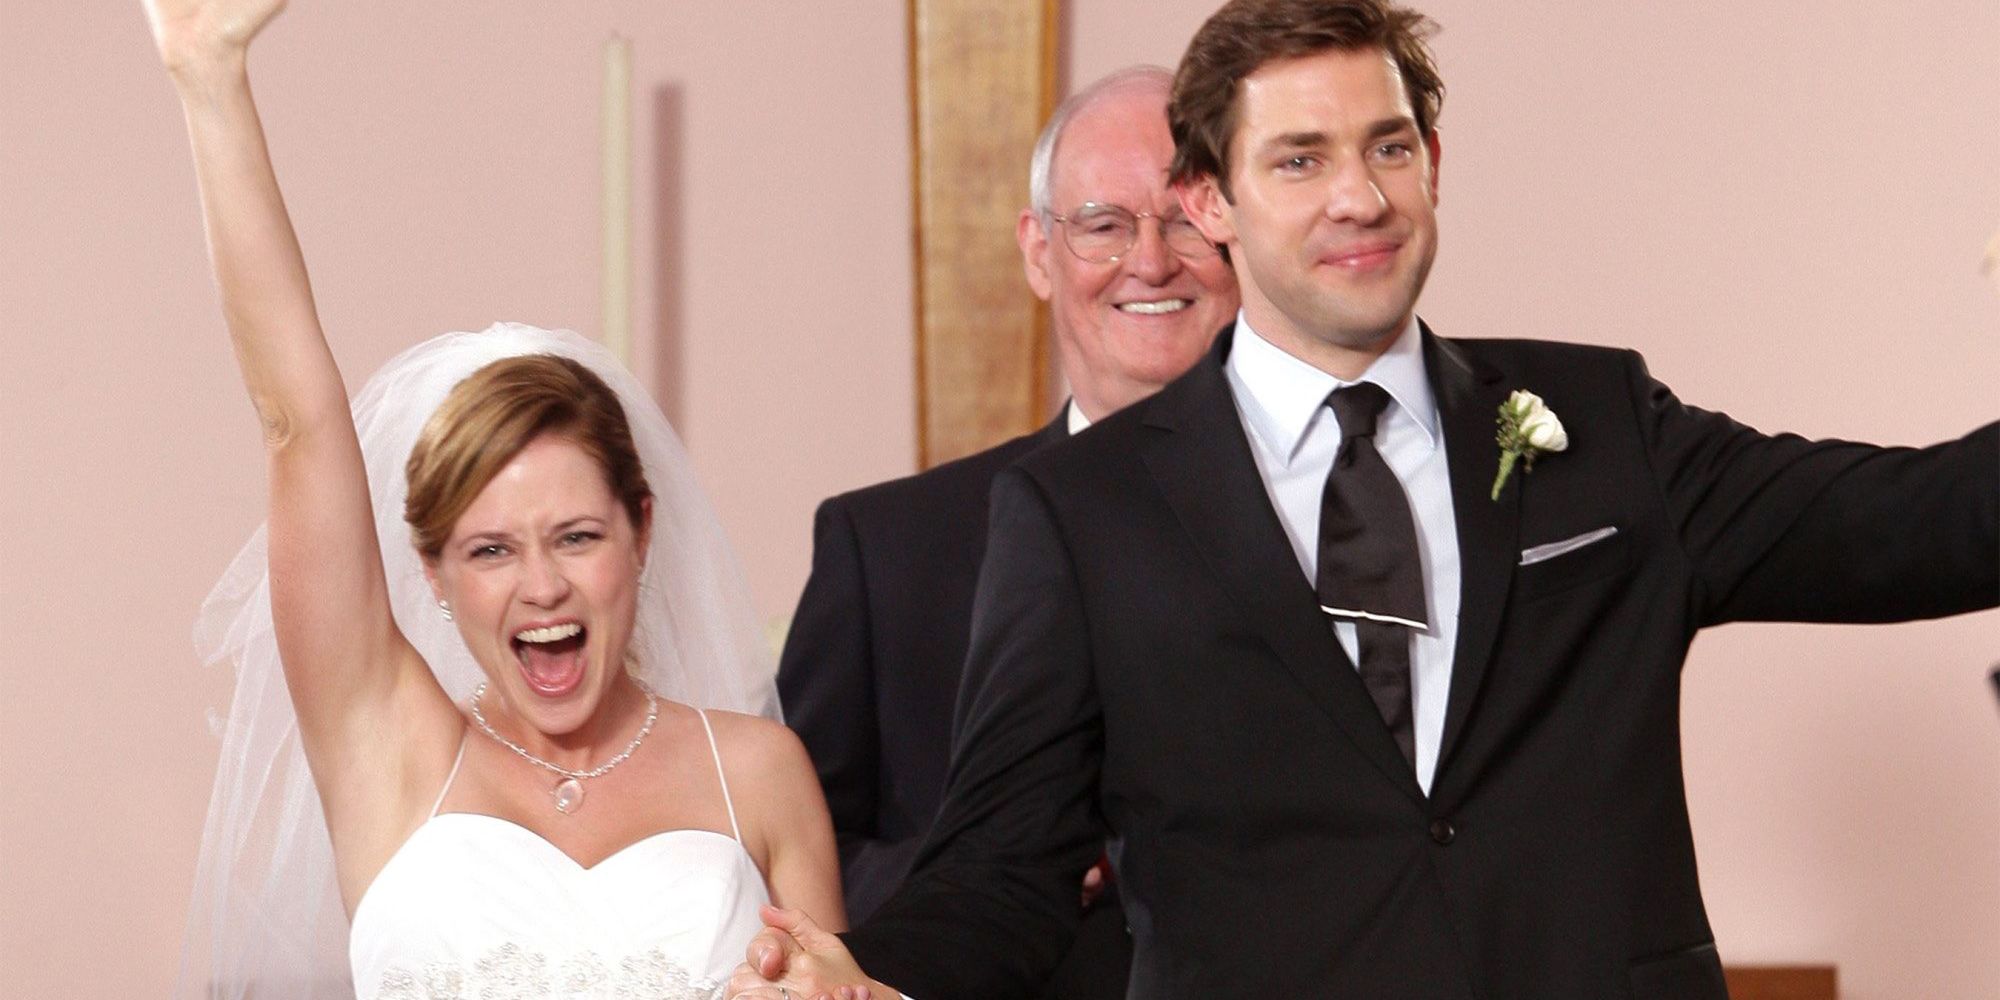 Jim et Pam sourient à leur mariage dans The Office